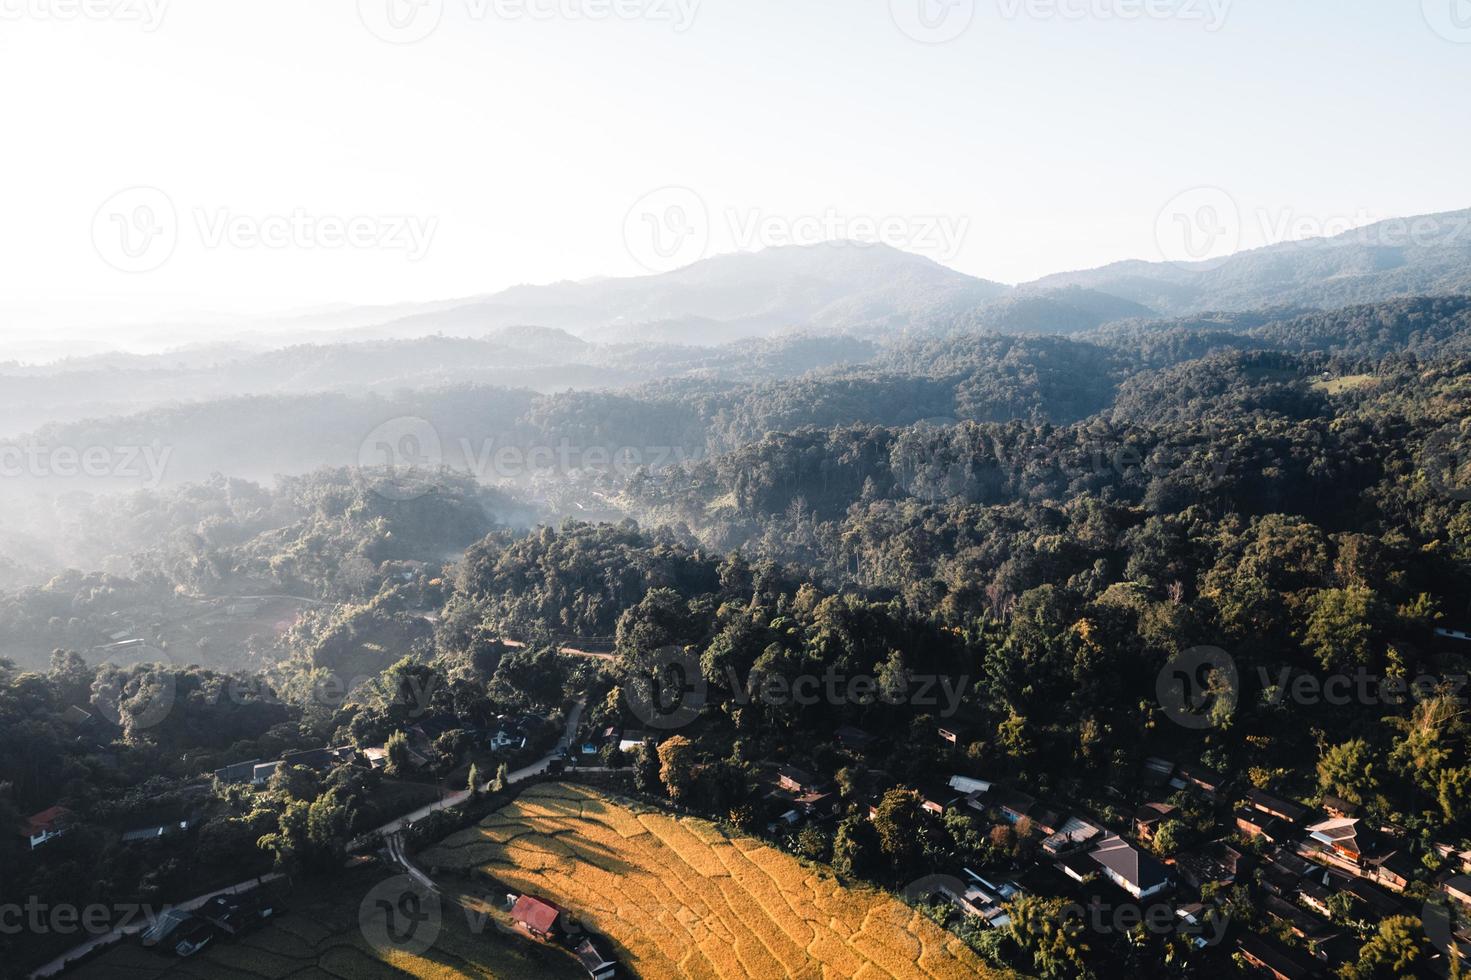 vista aerea del campo di terrazza di riso dorato al mattino foto